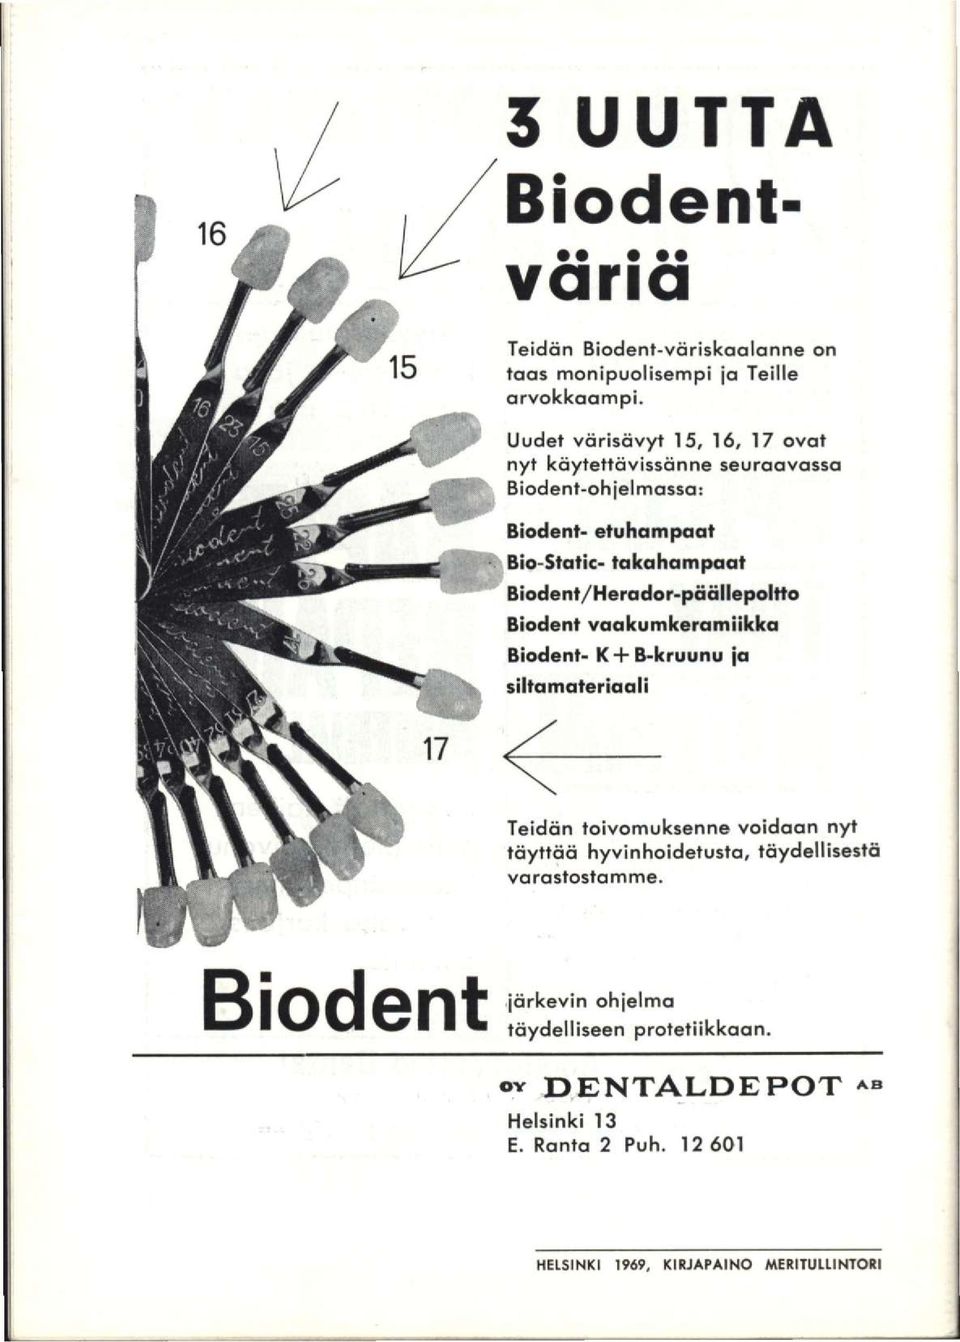 Biodent/Herador-päällepoltto Biodent vaakumkeramiikka Biodent- K + B-kruunu ja siltamateriaali Teidän toivomuksenne voidaan nyt täyttää